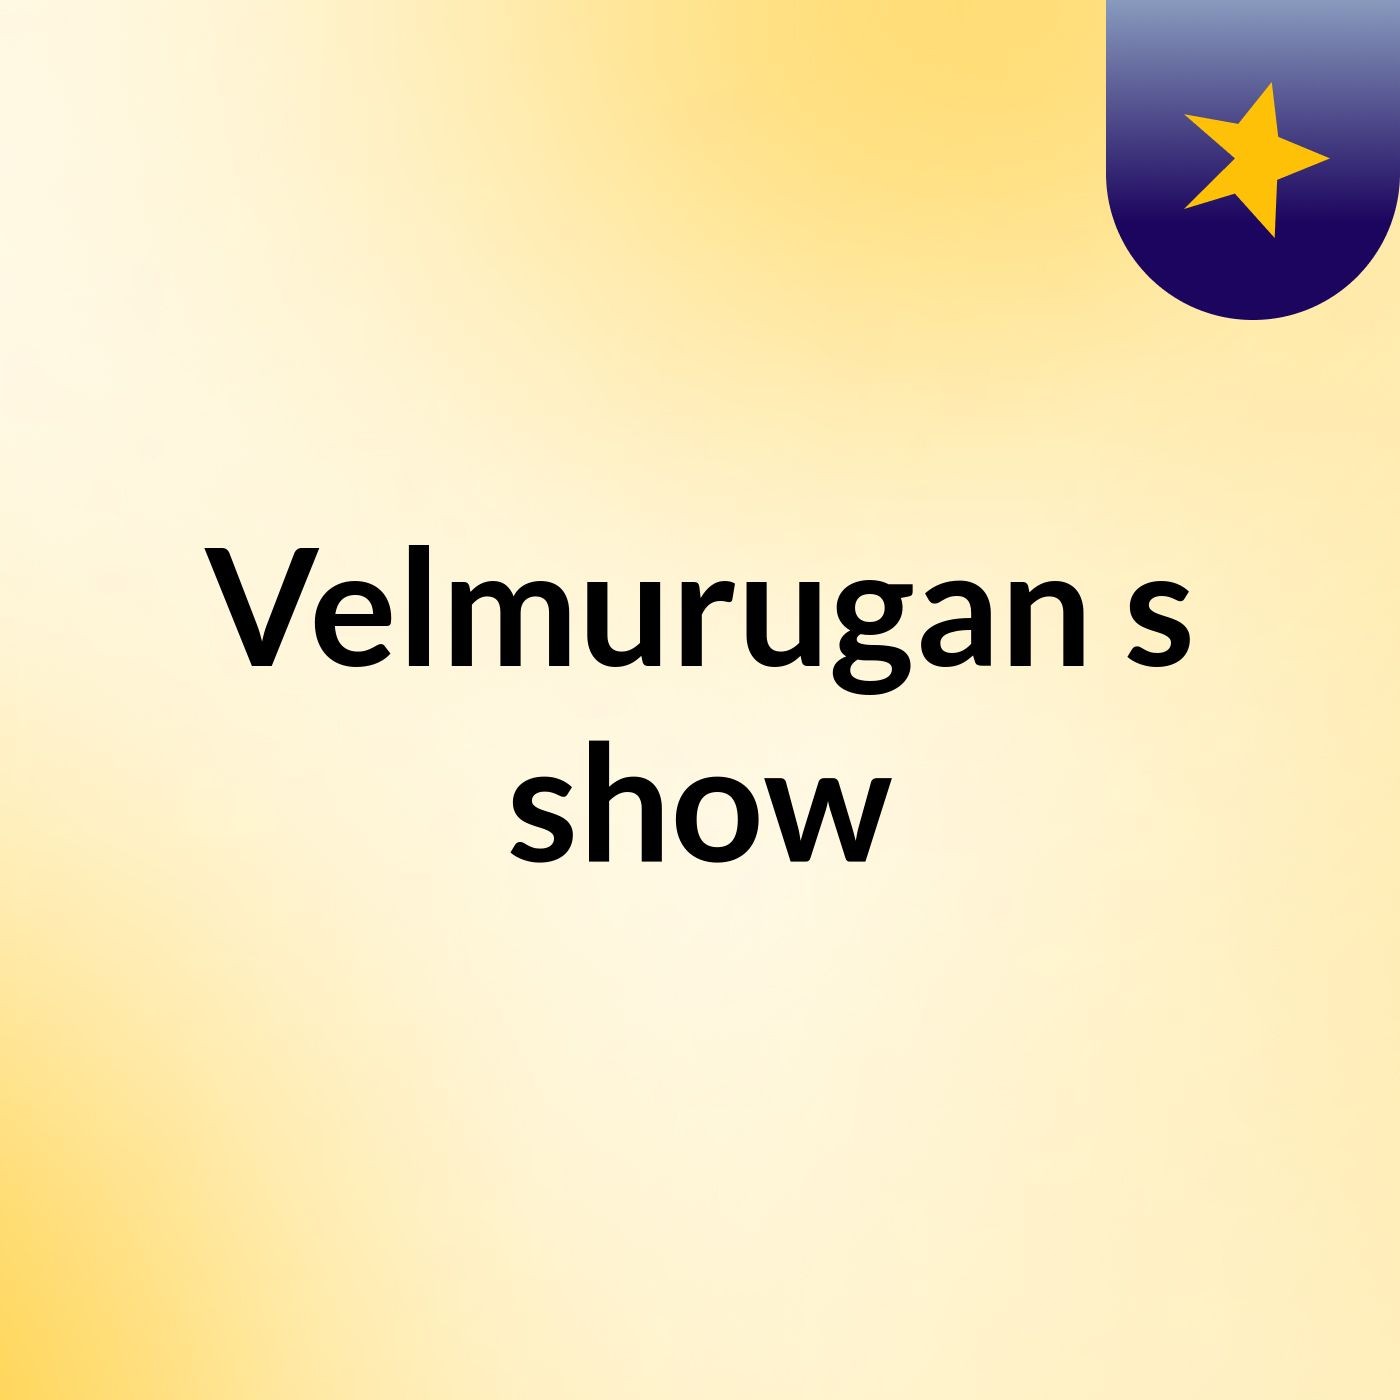 Velmurugan's show